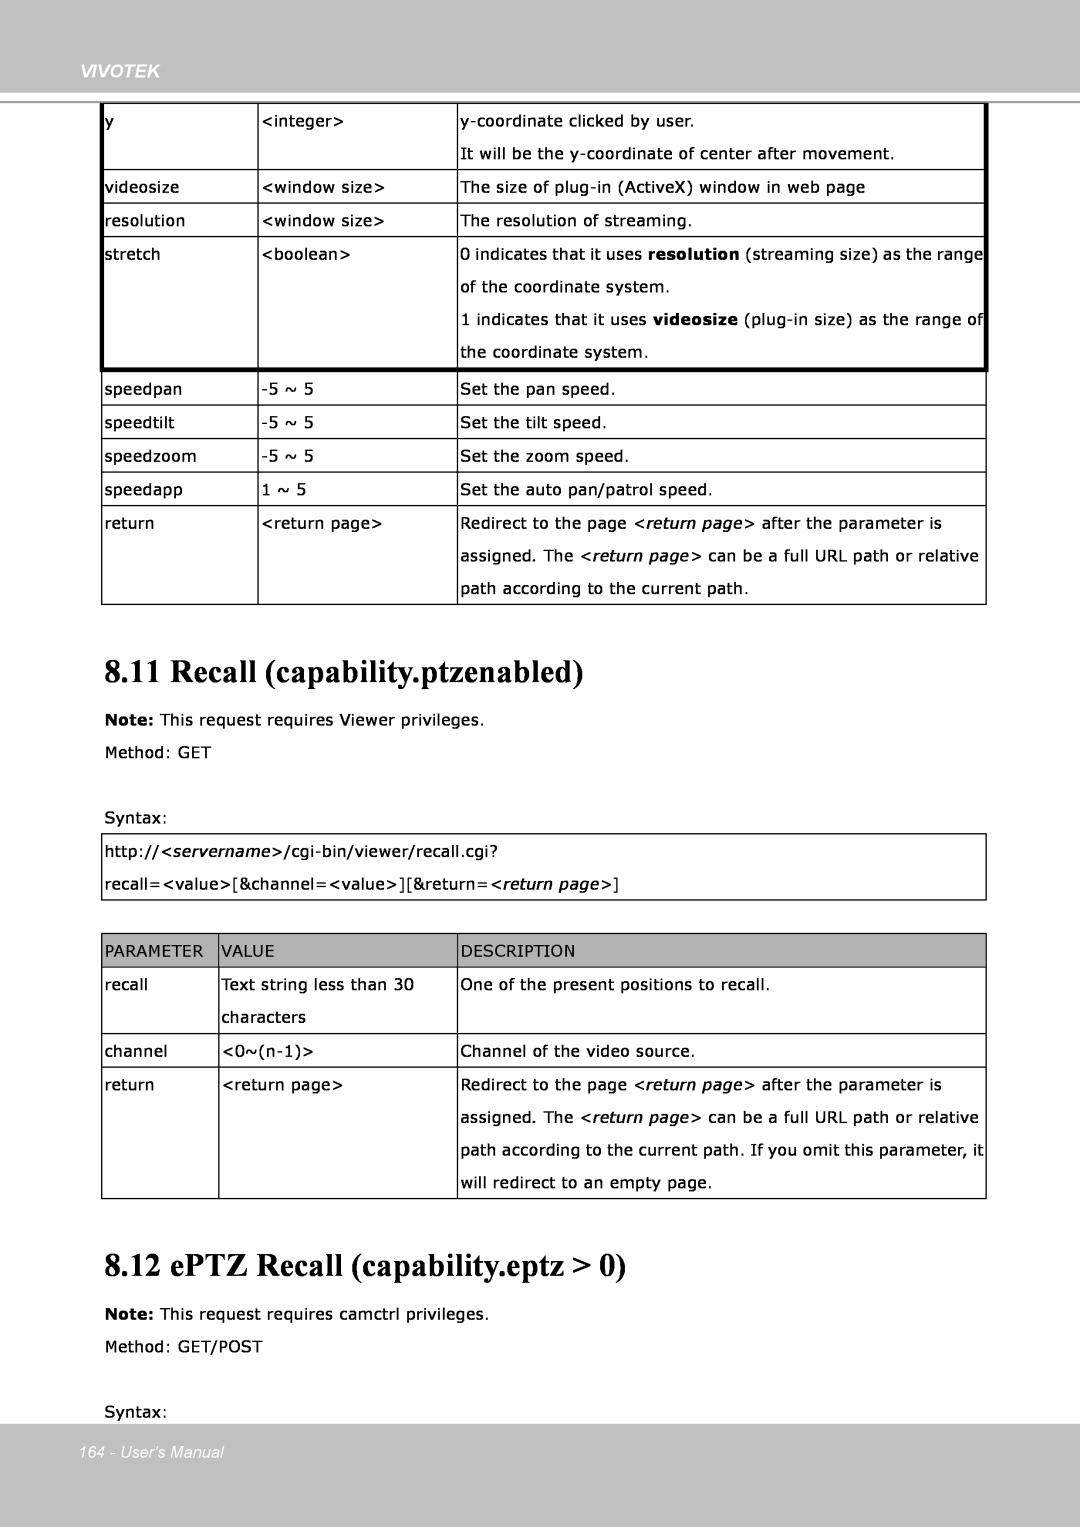 Vivotek IP8151 manual Recall capability.ptzenabled, ePTZ Recall capability.eptz >, Vivotek, Users Manual 